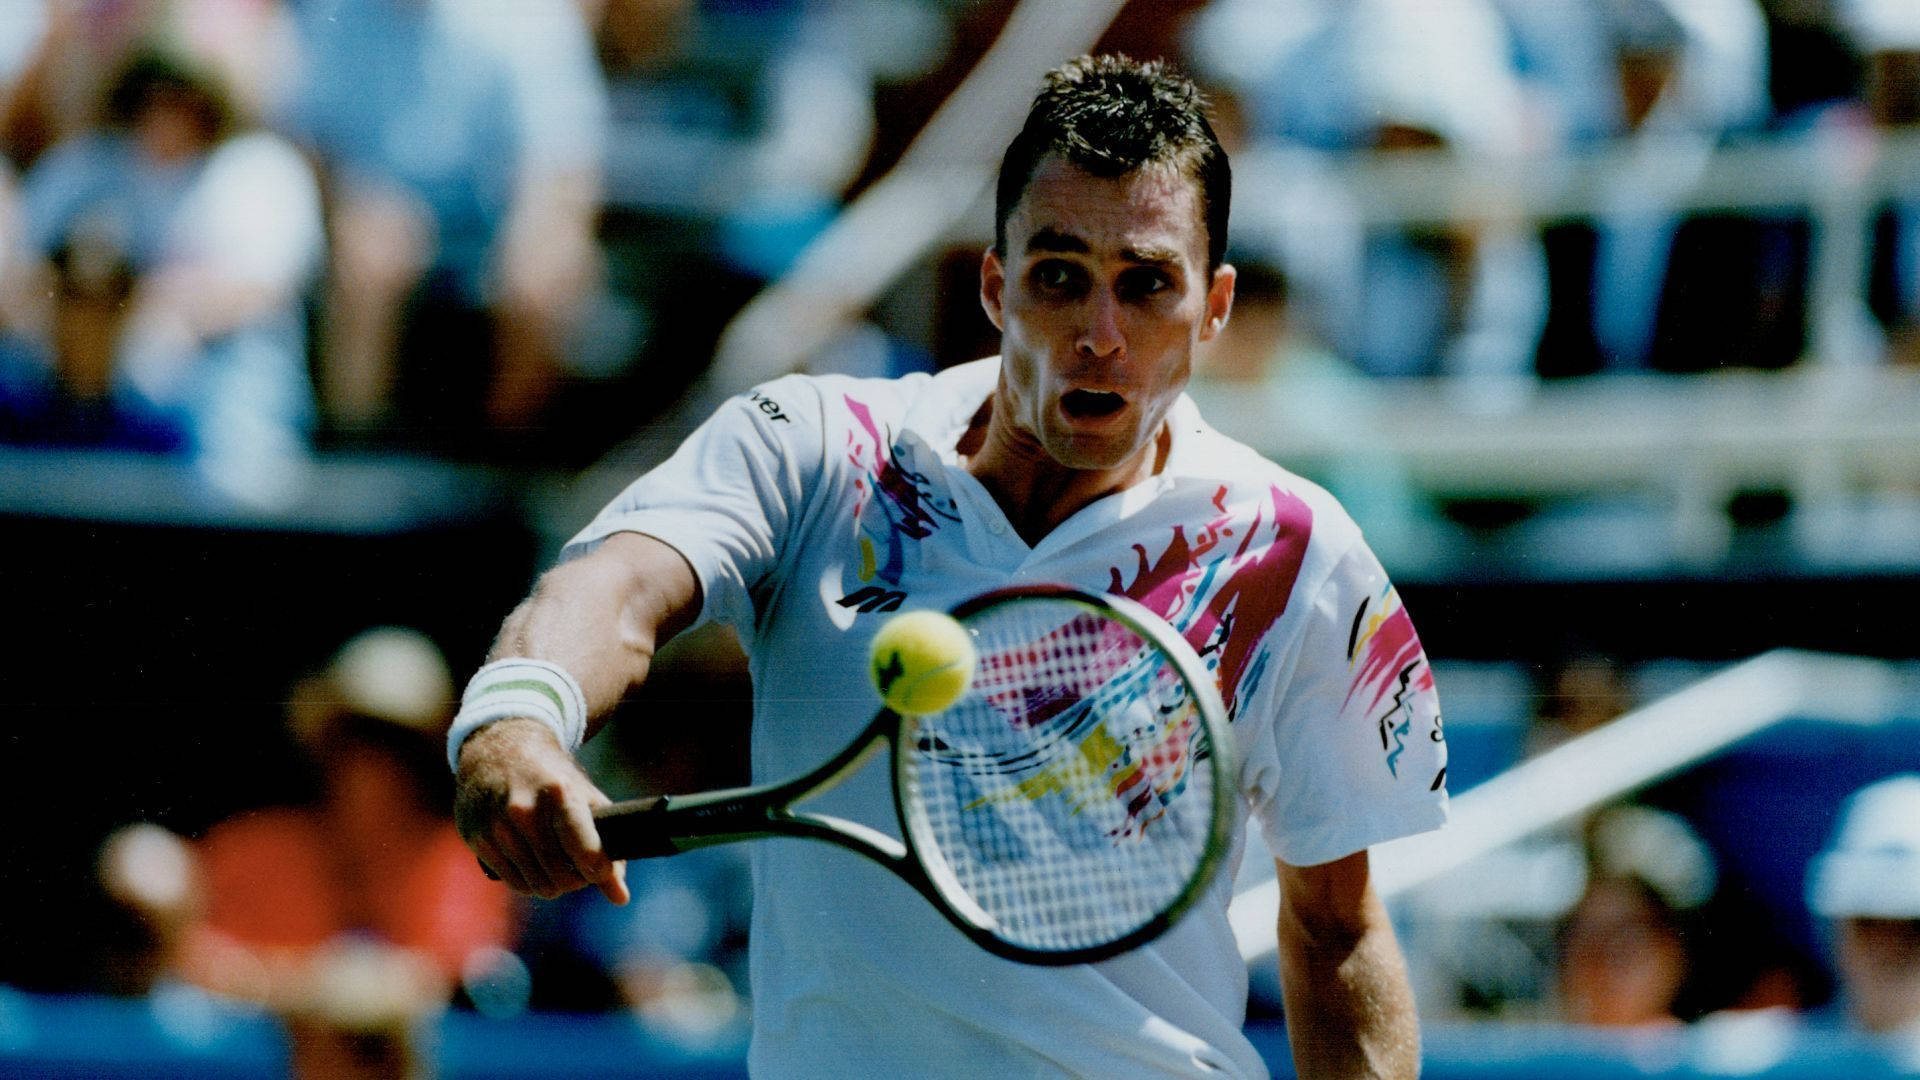 Motivational Wallpaper: Ivan Lendl spiller tennis motivation wallpaper. Wallpaper